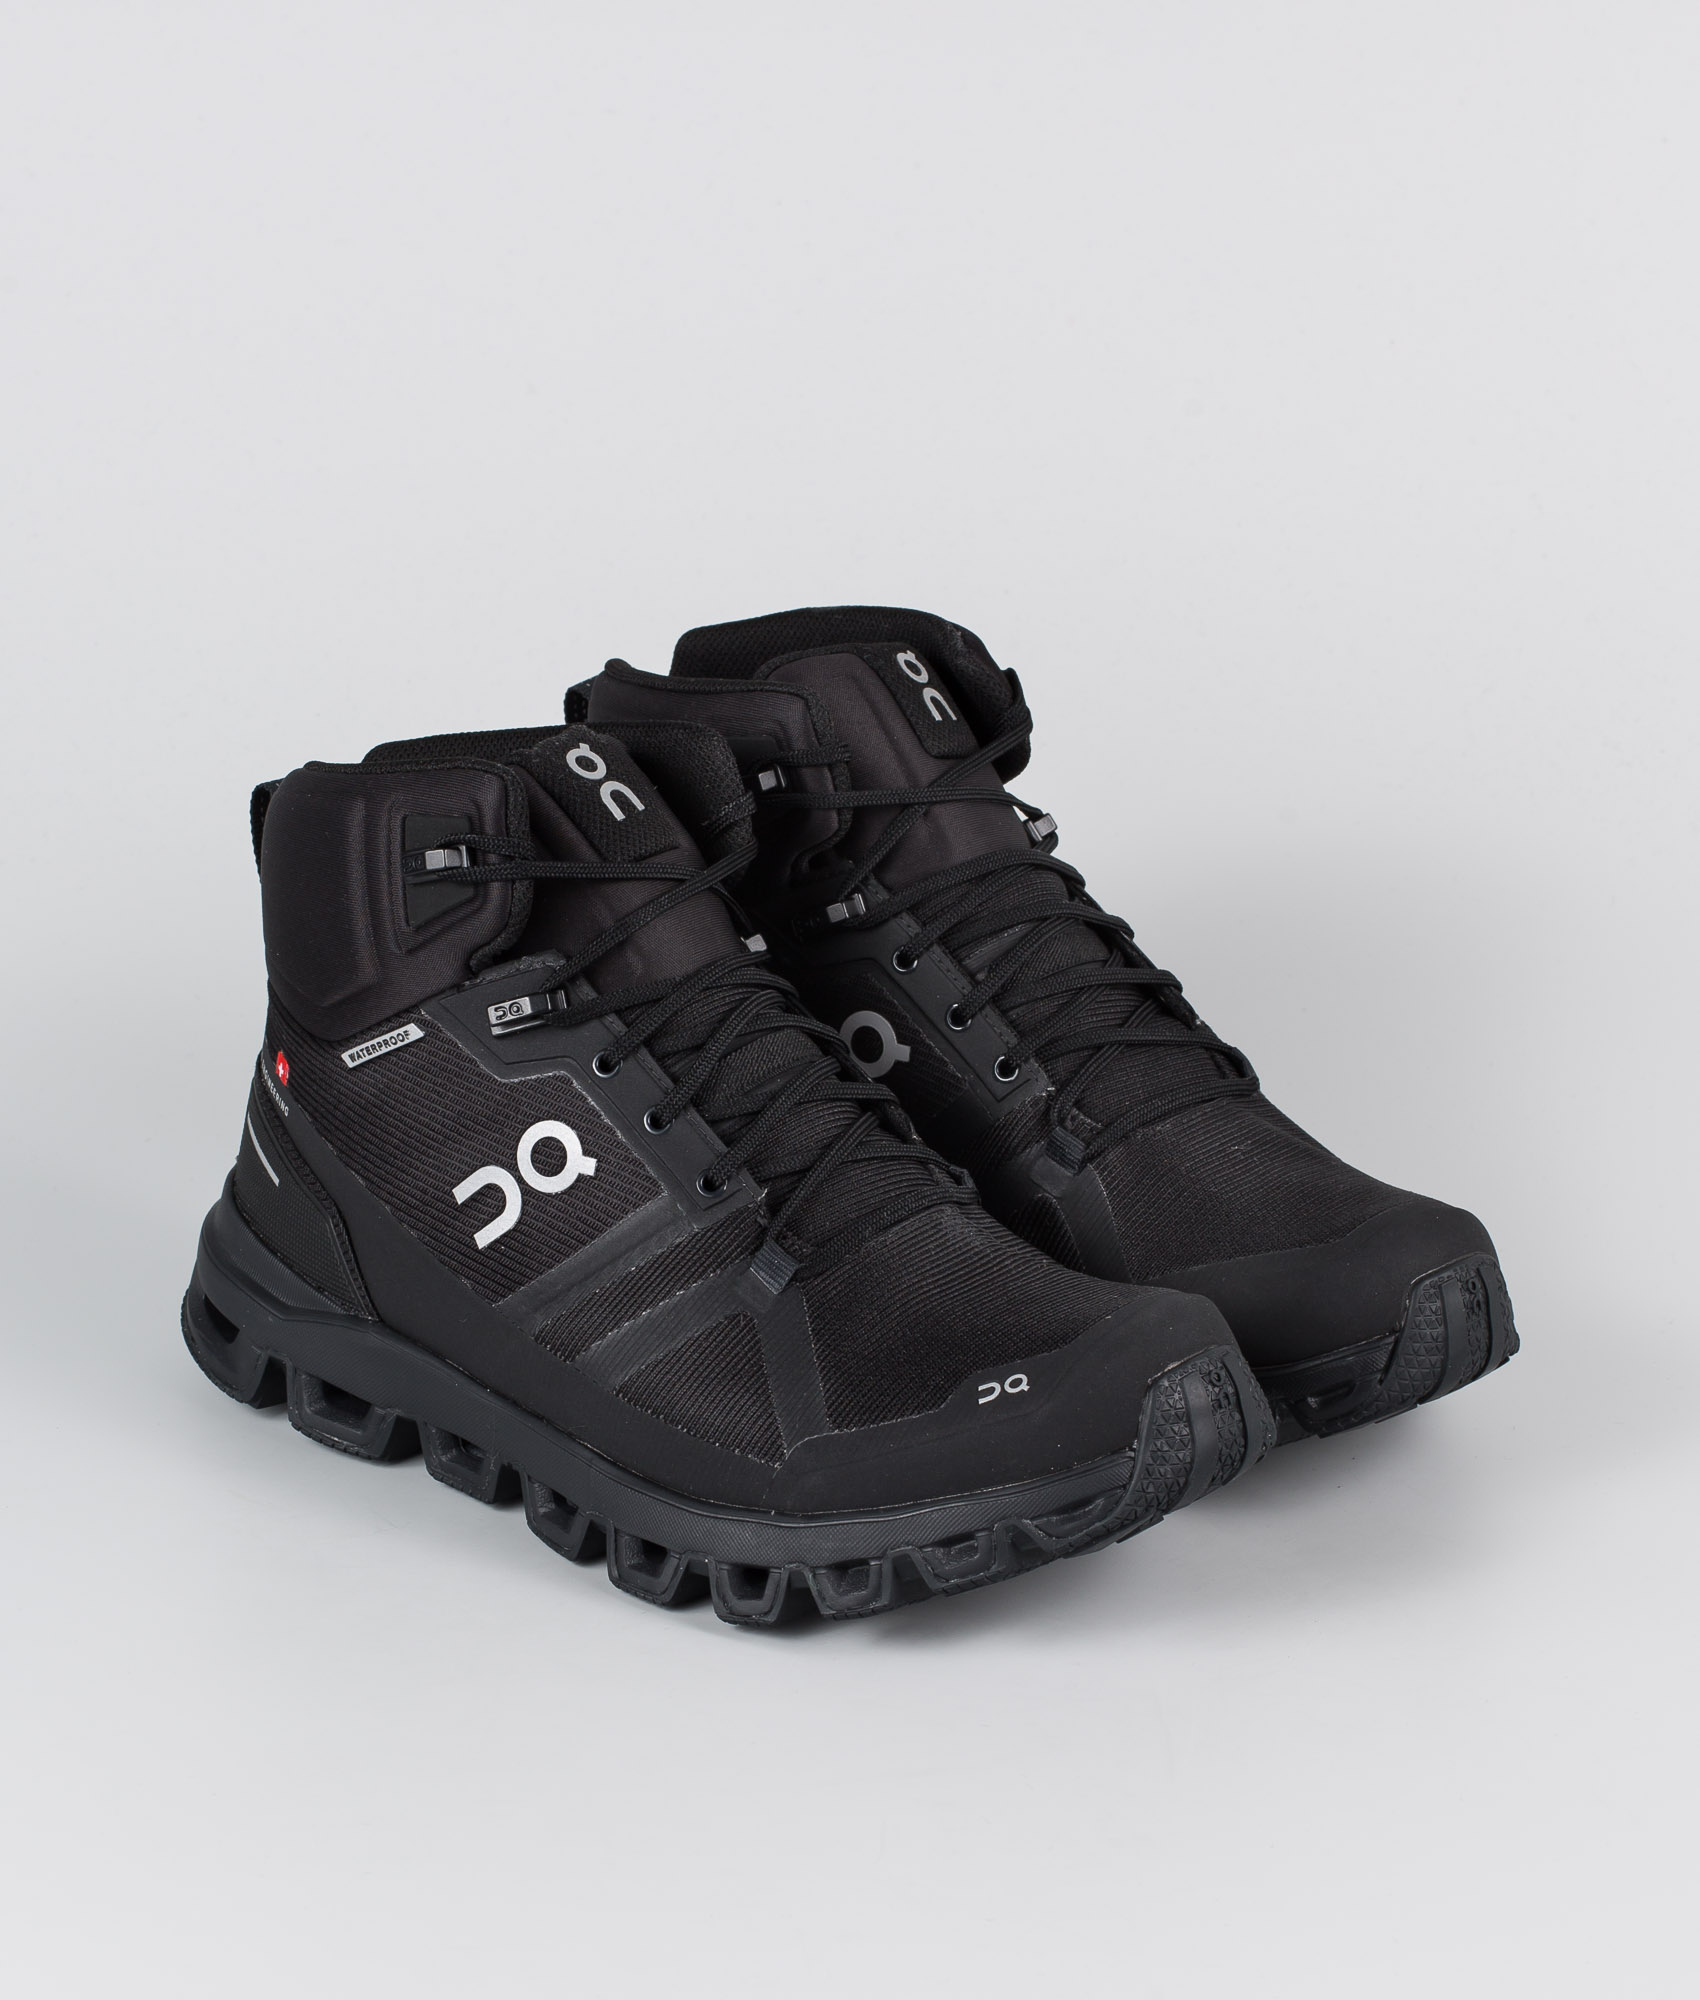 black waterproof shoes women's